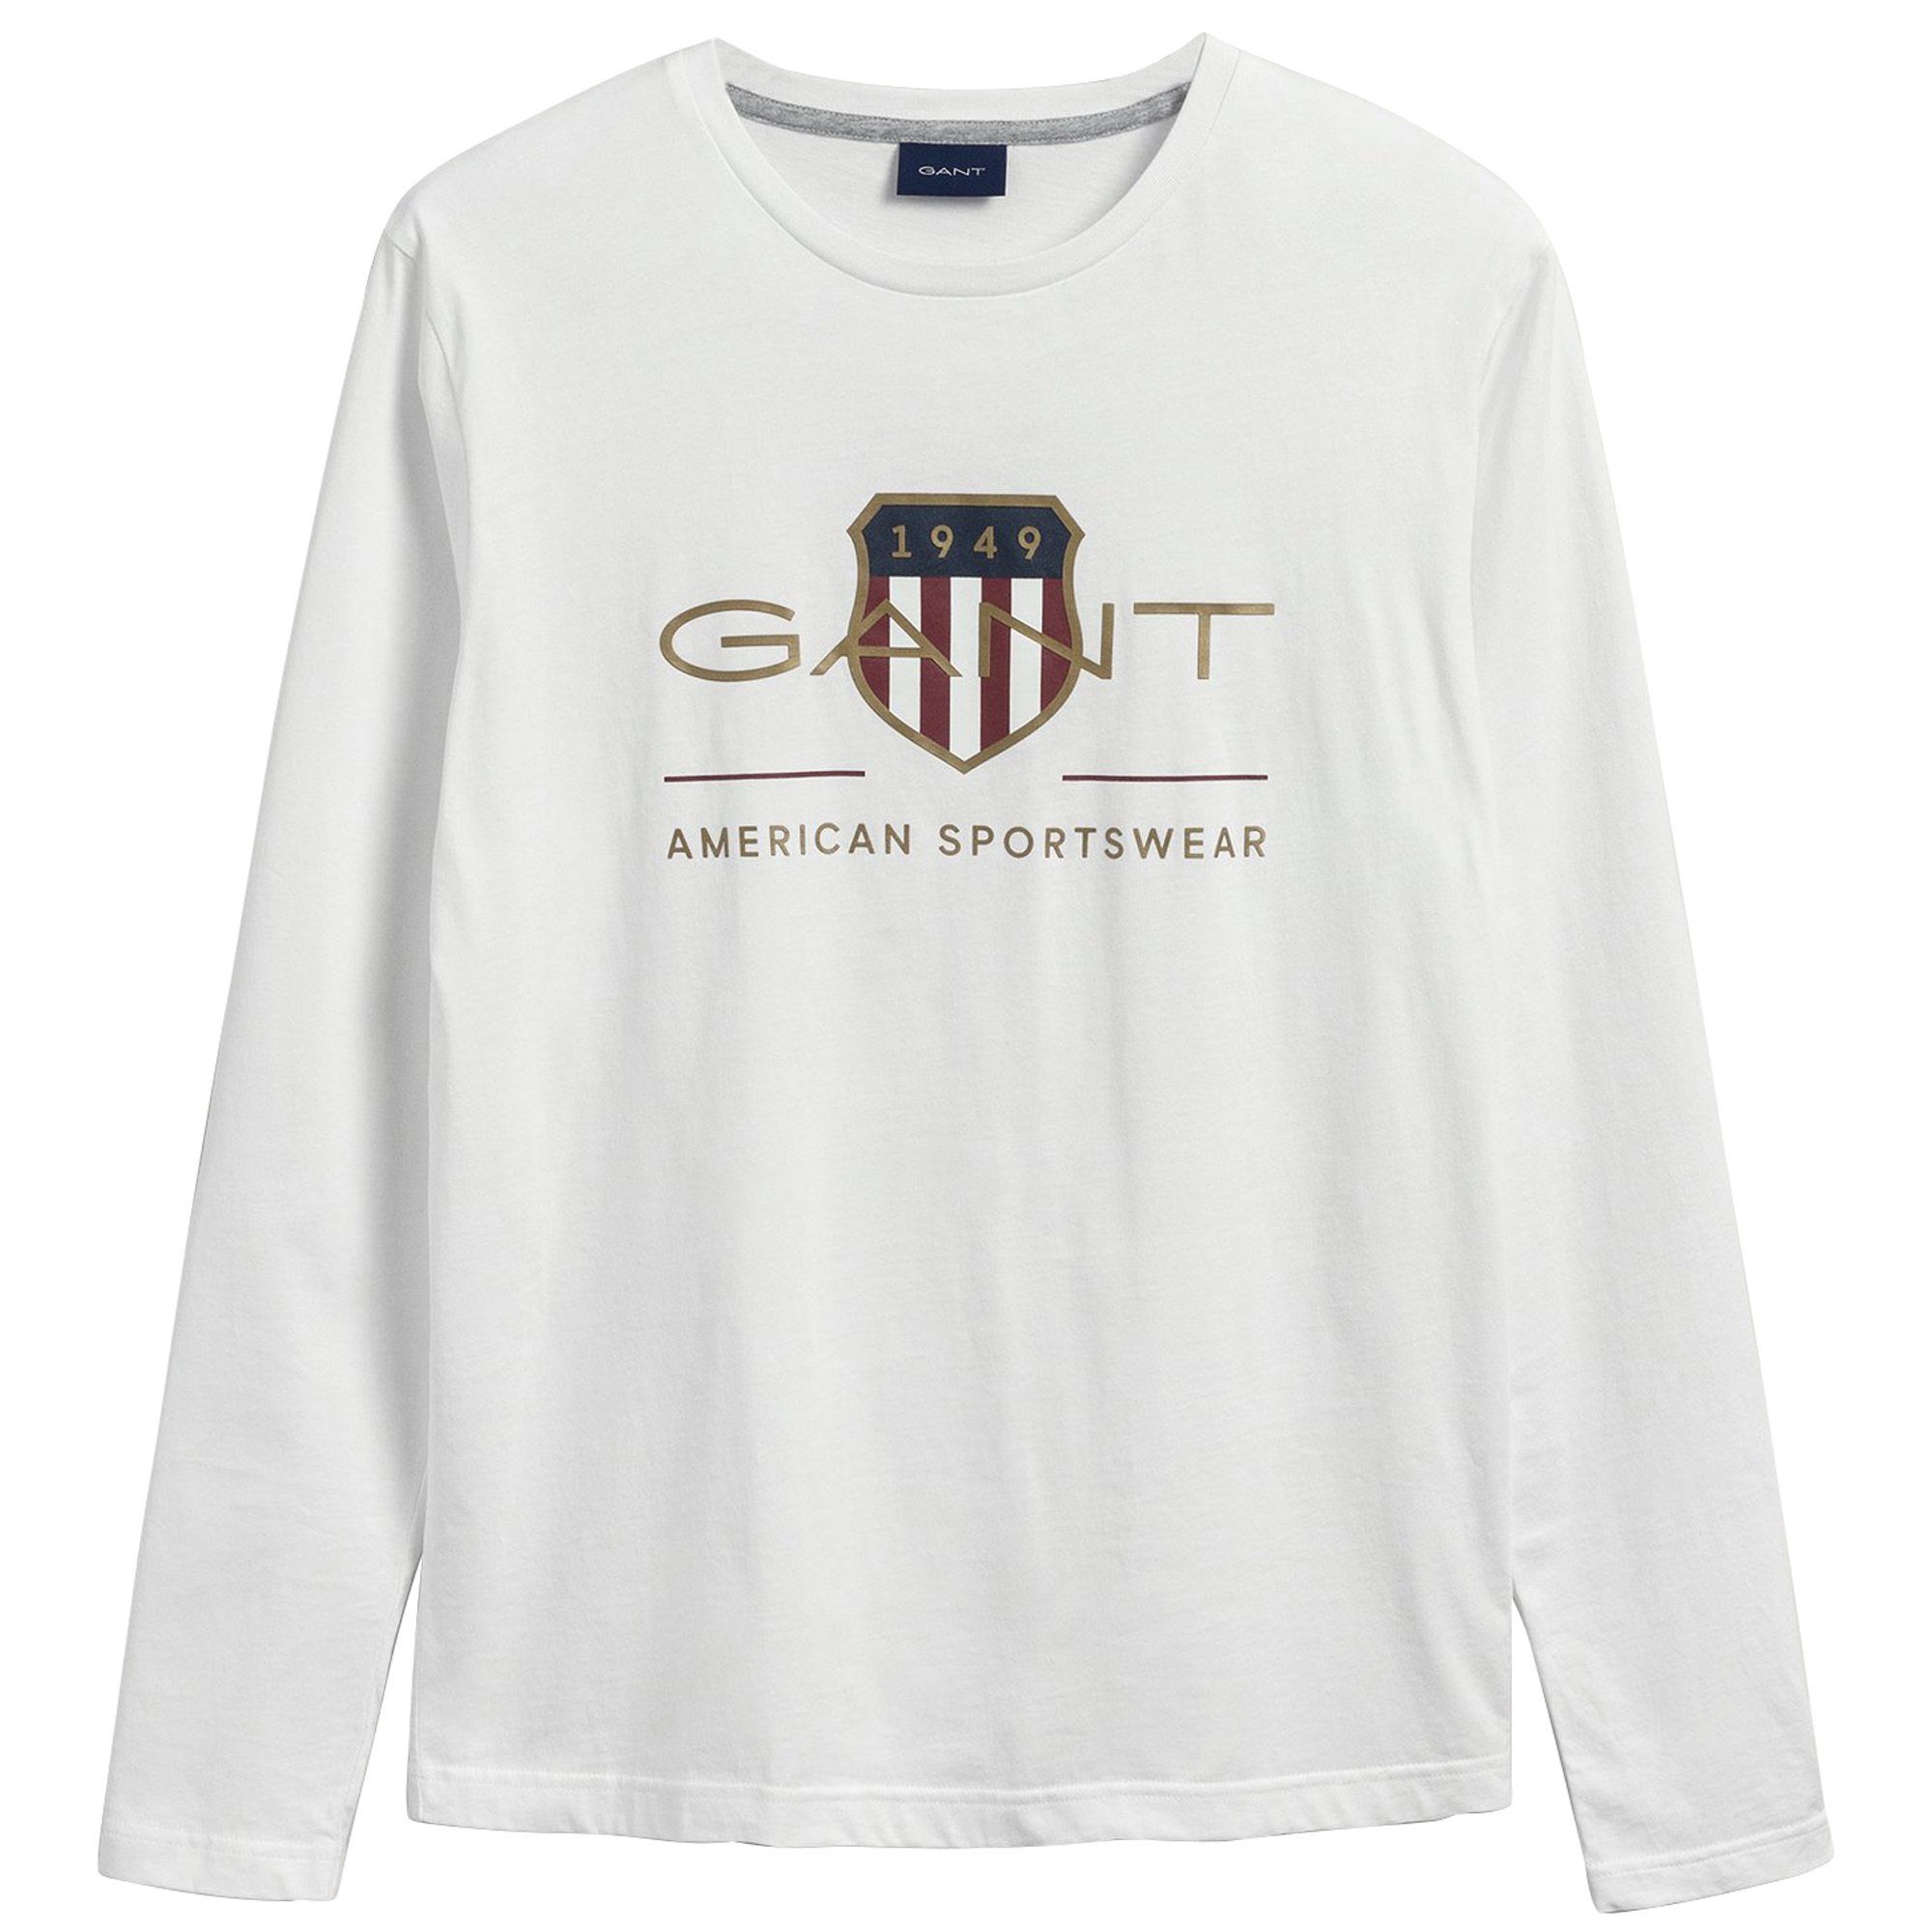 [Großer Ausverkauf nur jetzt] Gant T-Shirt T-Shirt - LS ARCHIVE SHIELD Herren Weiß Langarm